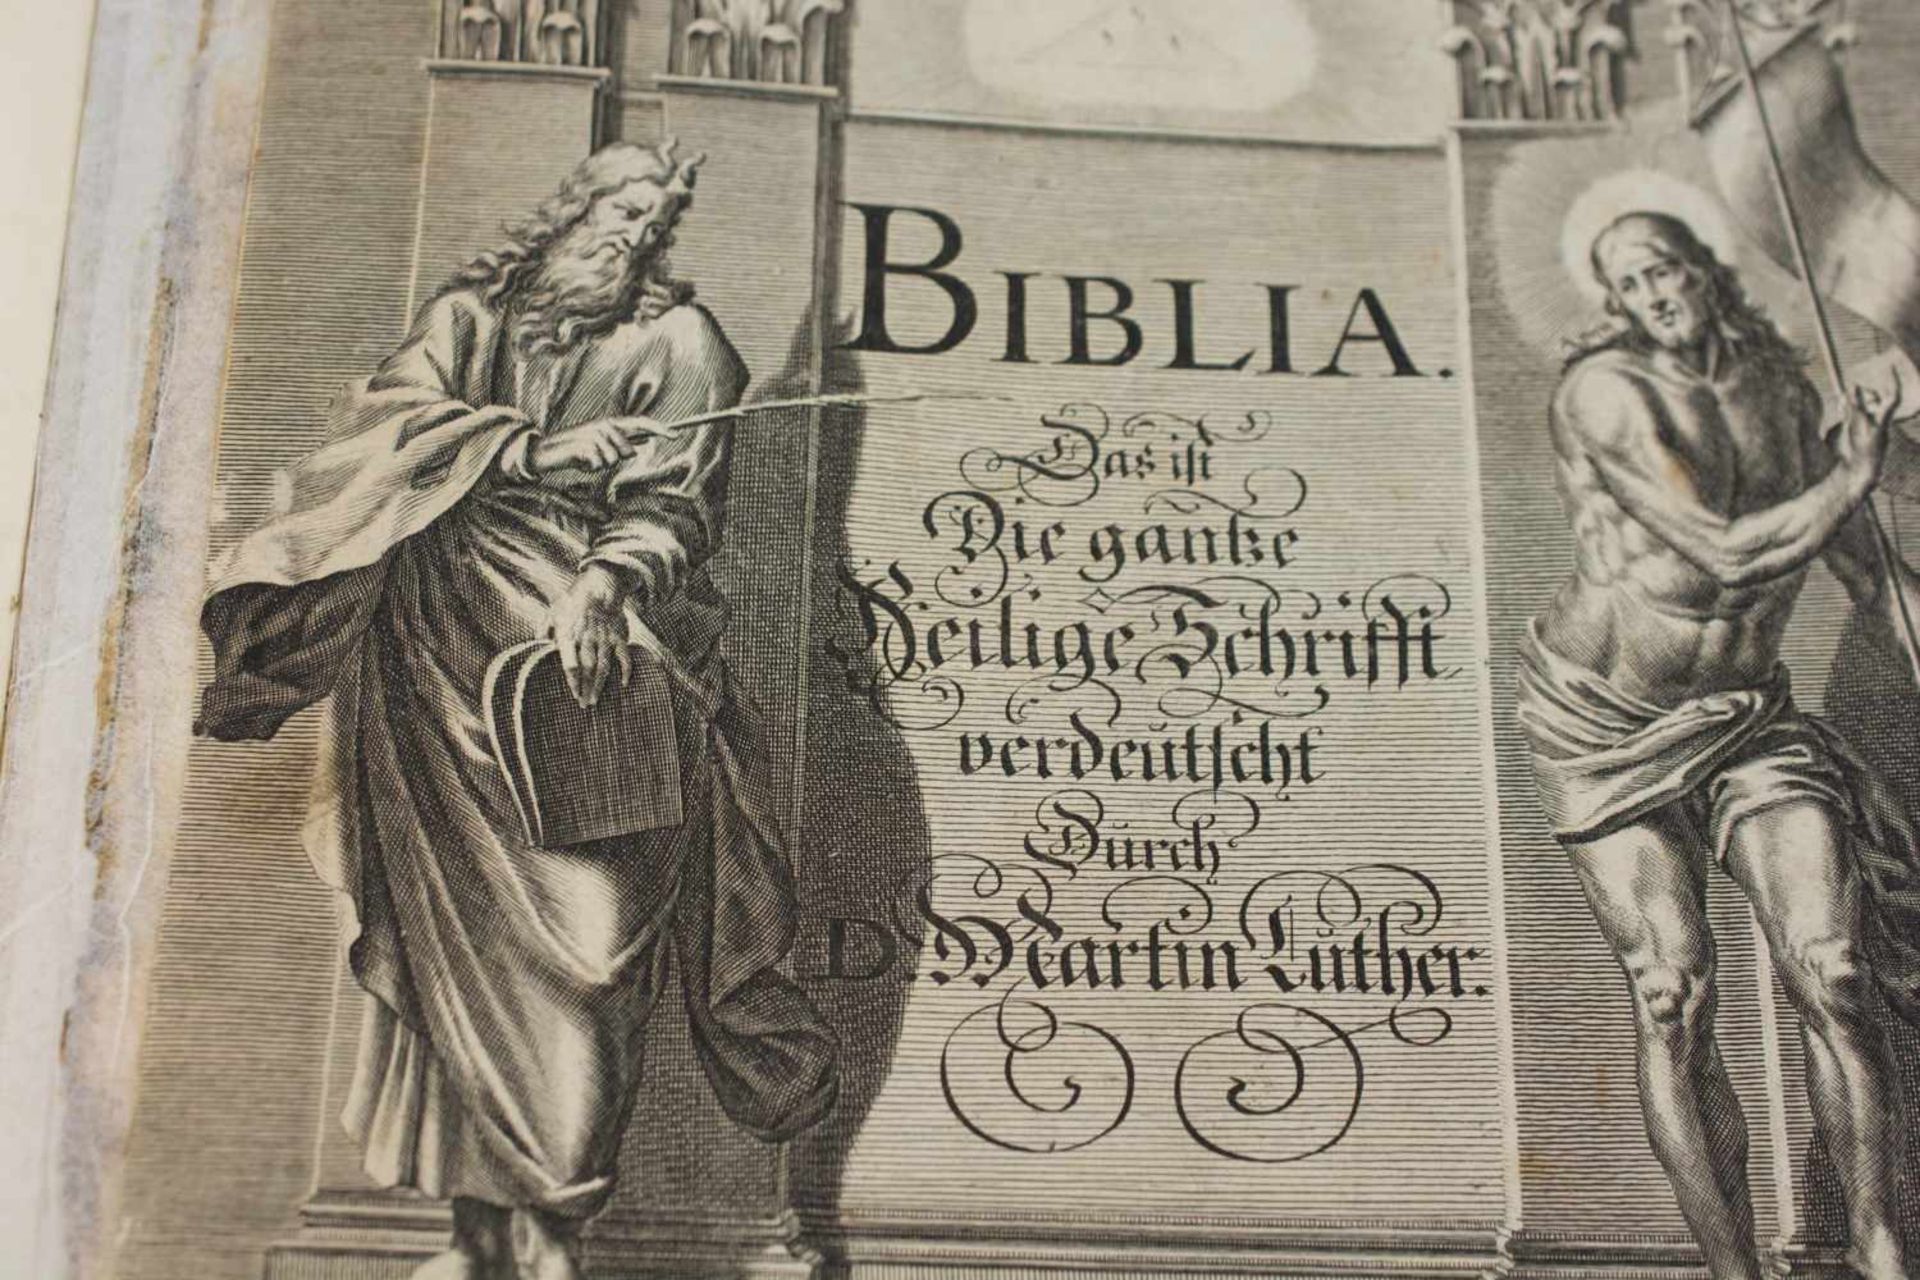 Bibel Das ist die ganze heilige Schrift verdeutlicht durch Martin Luther, 17. Jh., Johann Andrea - Image 4 of 4